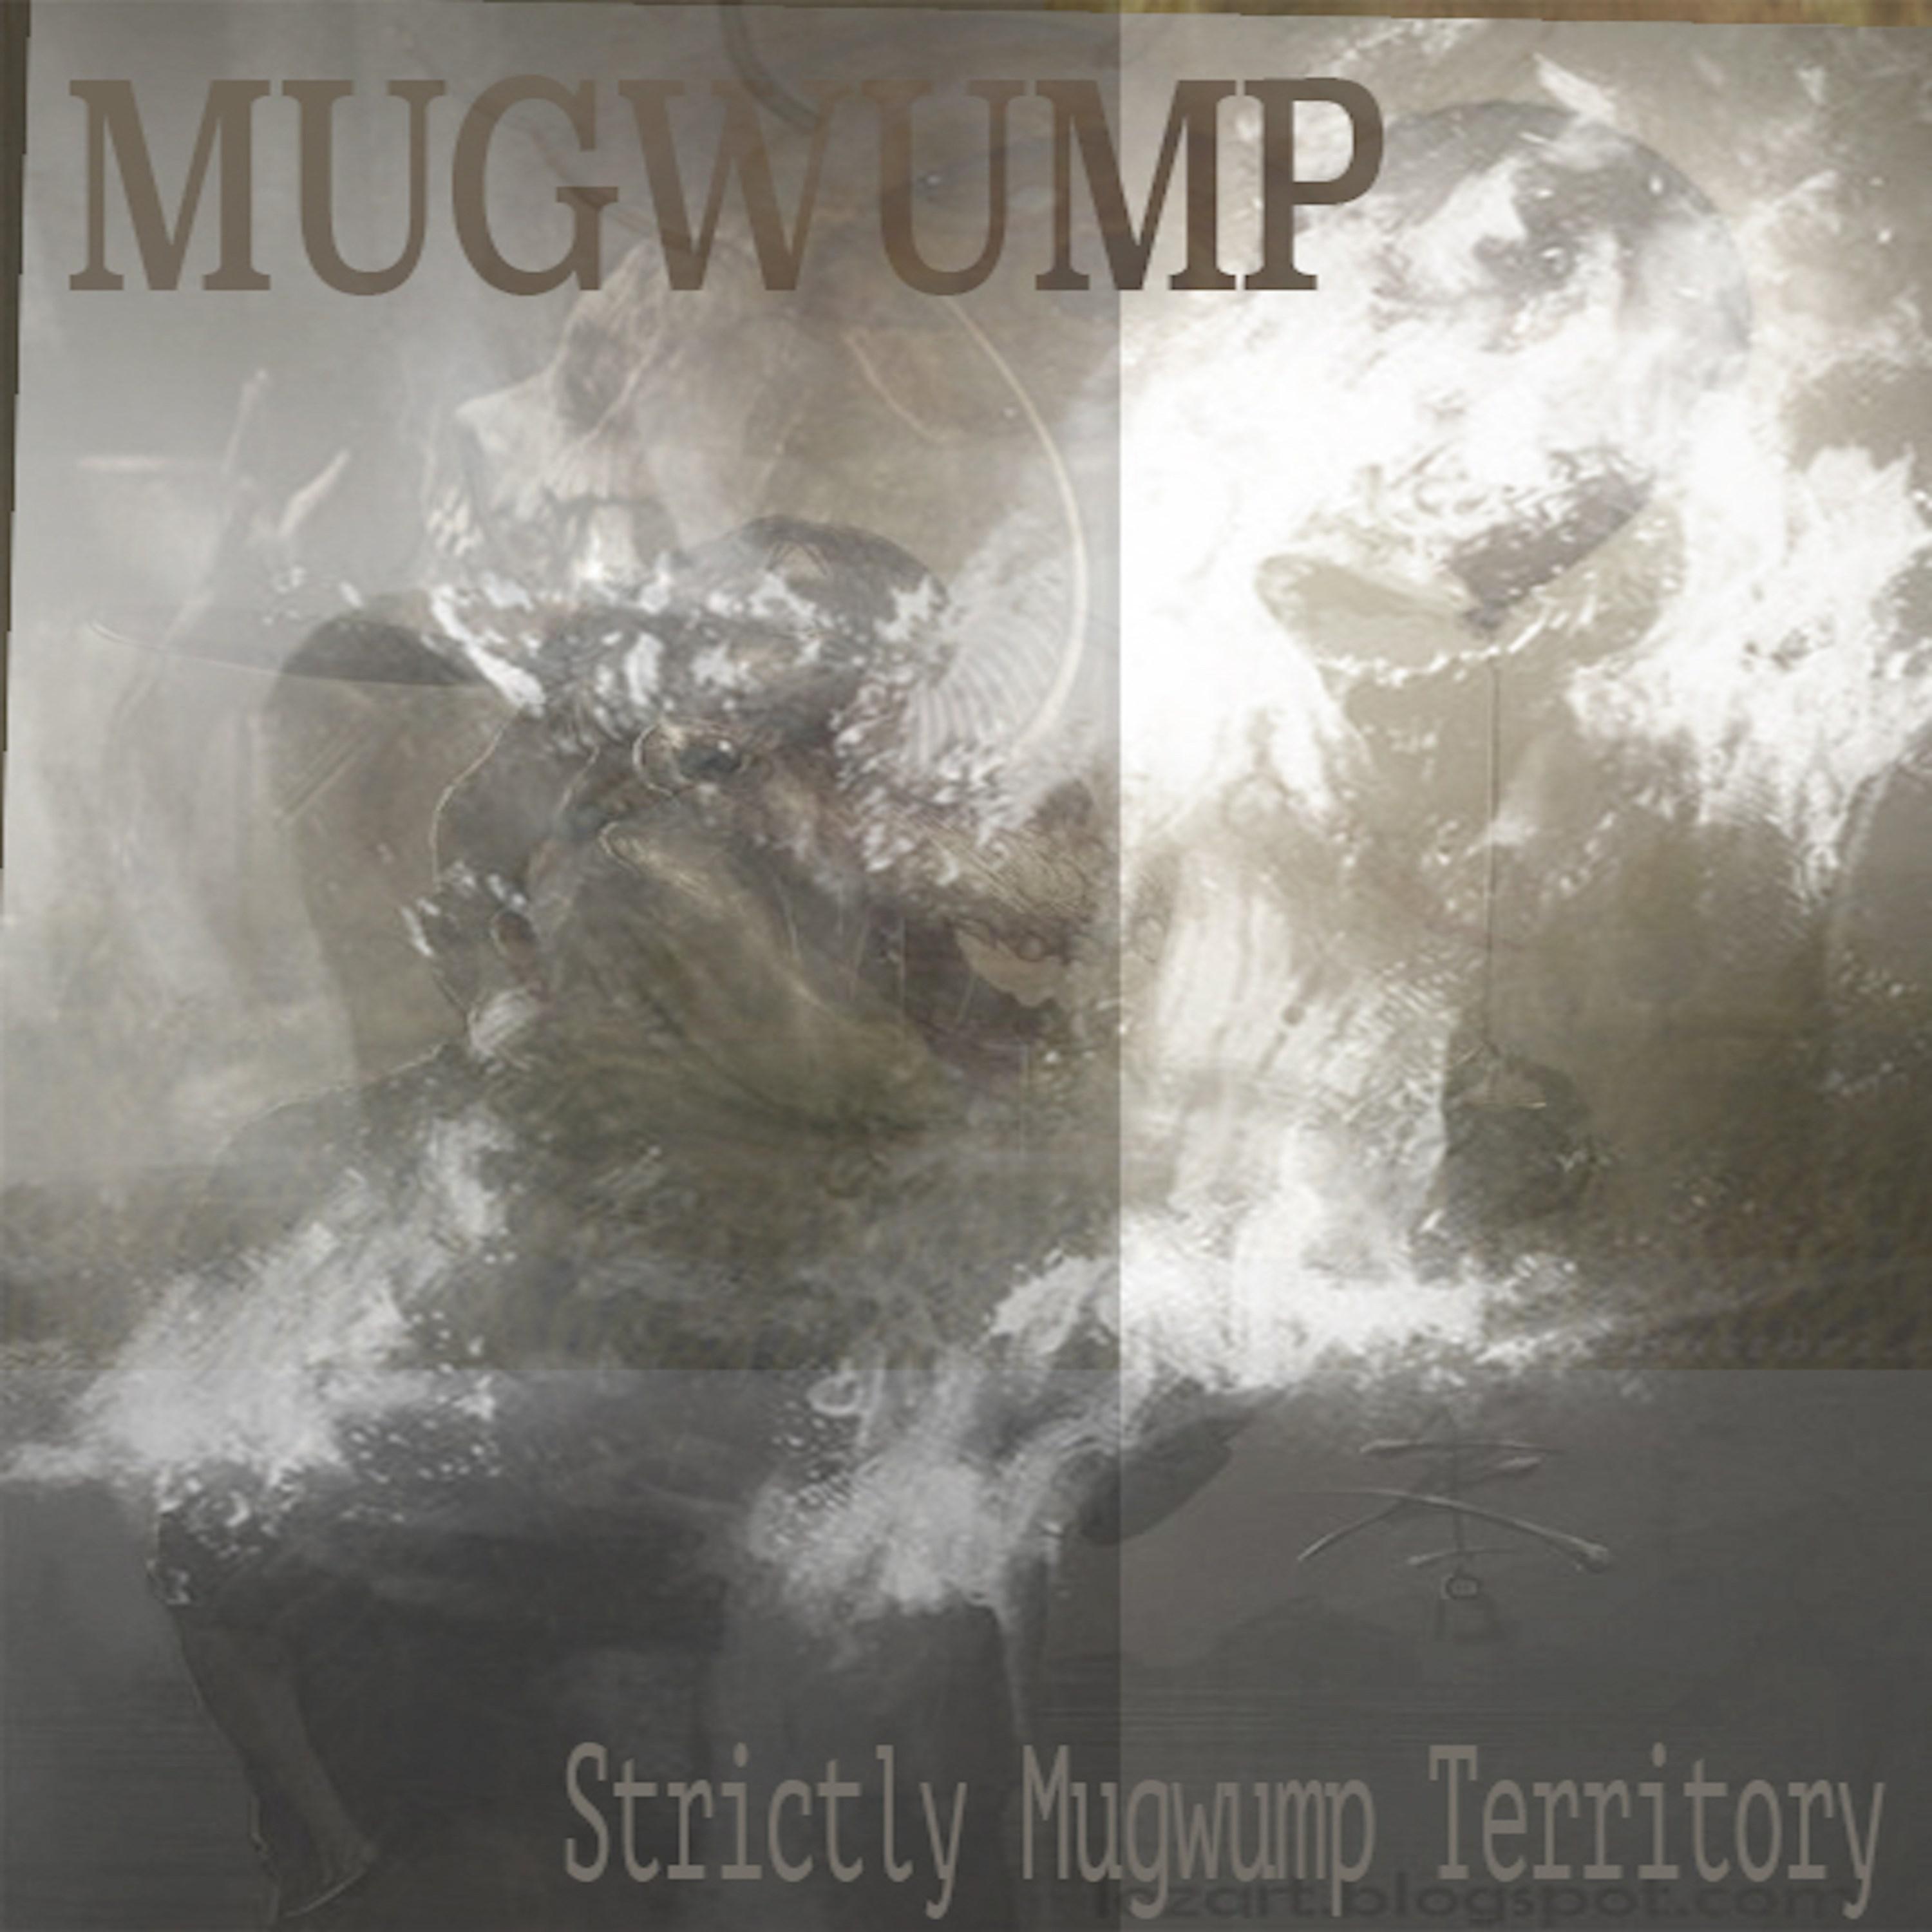 Strictly Mugwump Territory